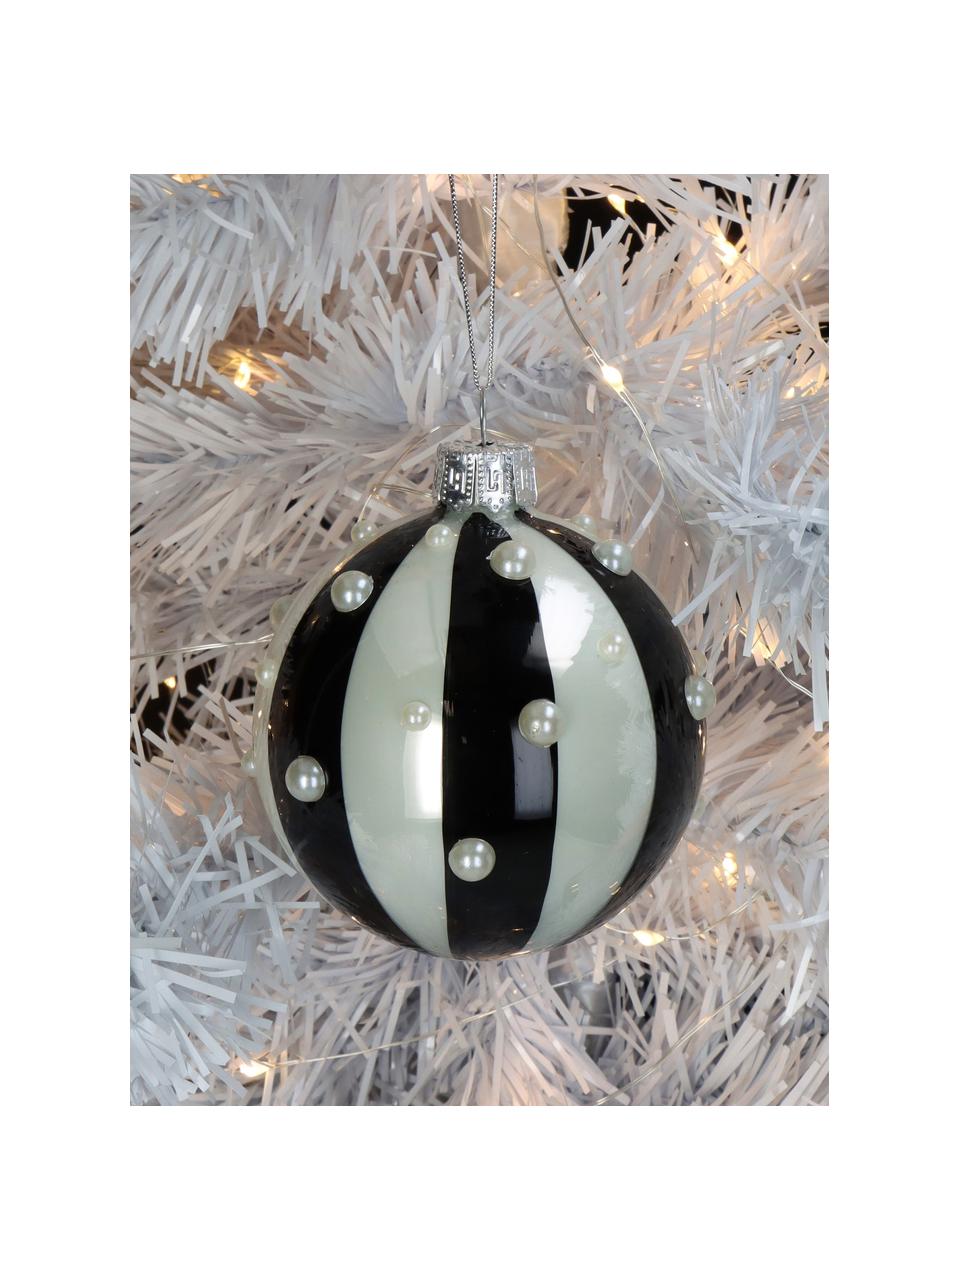 Adornos navideños Stripe, 2 uds., Vidrio, Negro y blanco perla brillante, Ø 8 cm